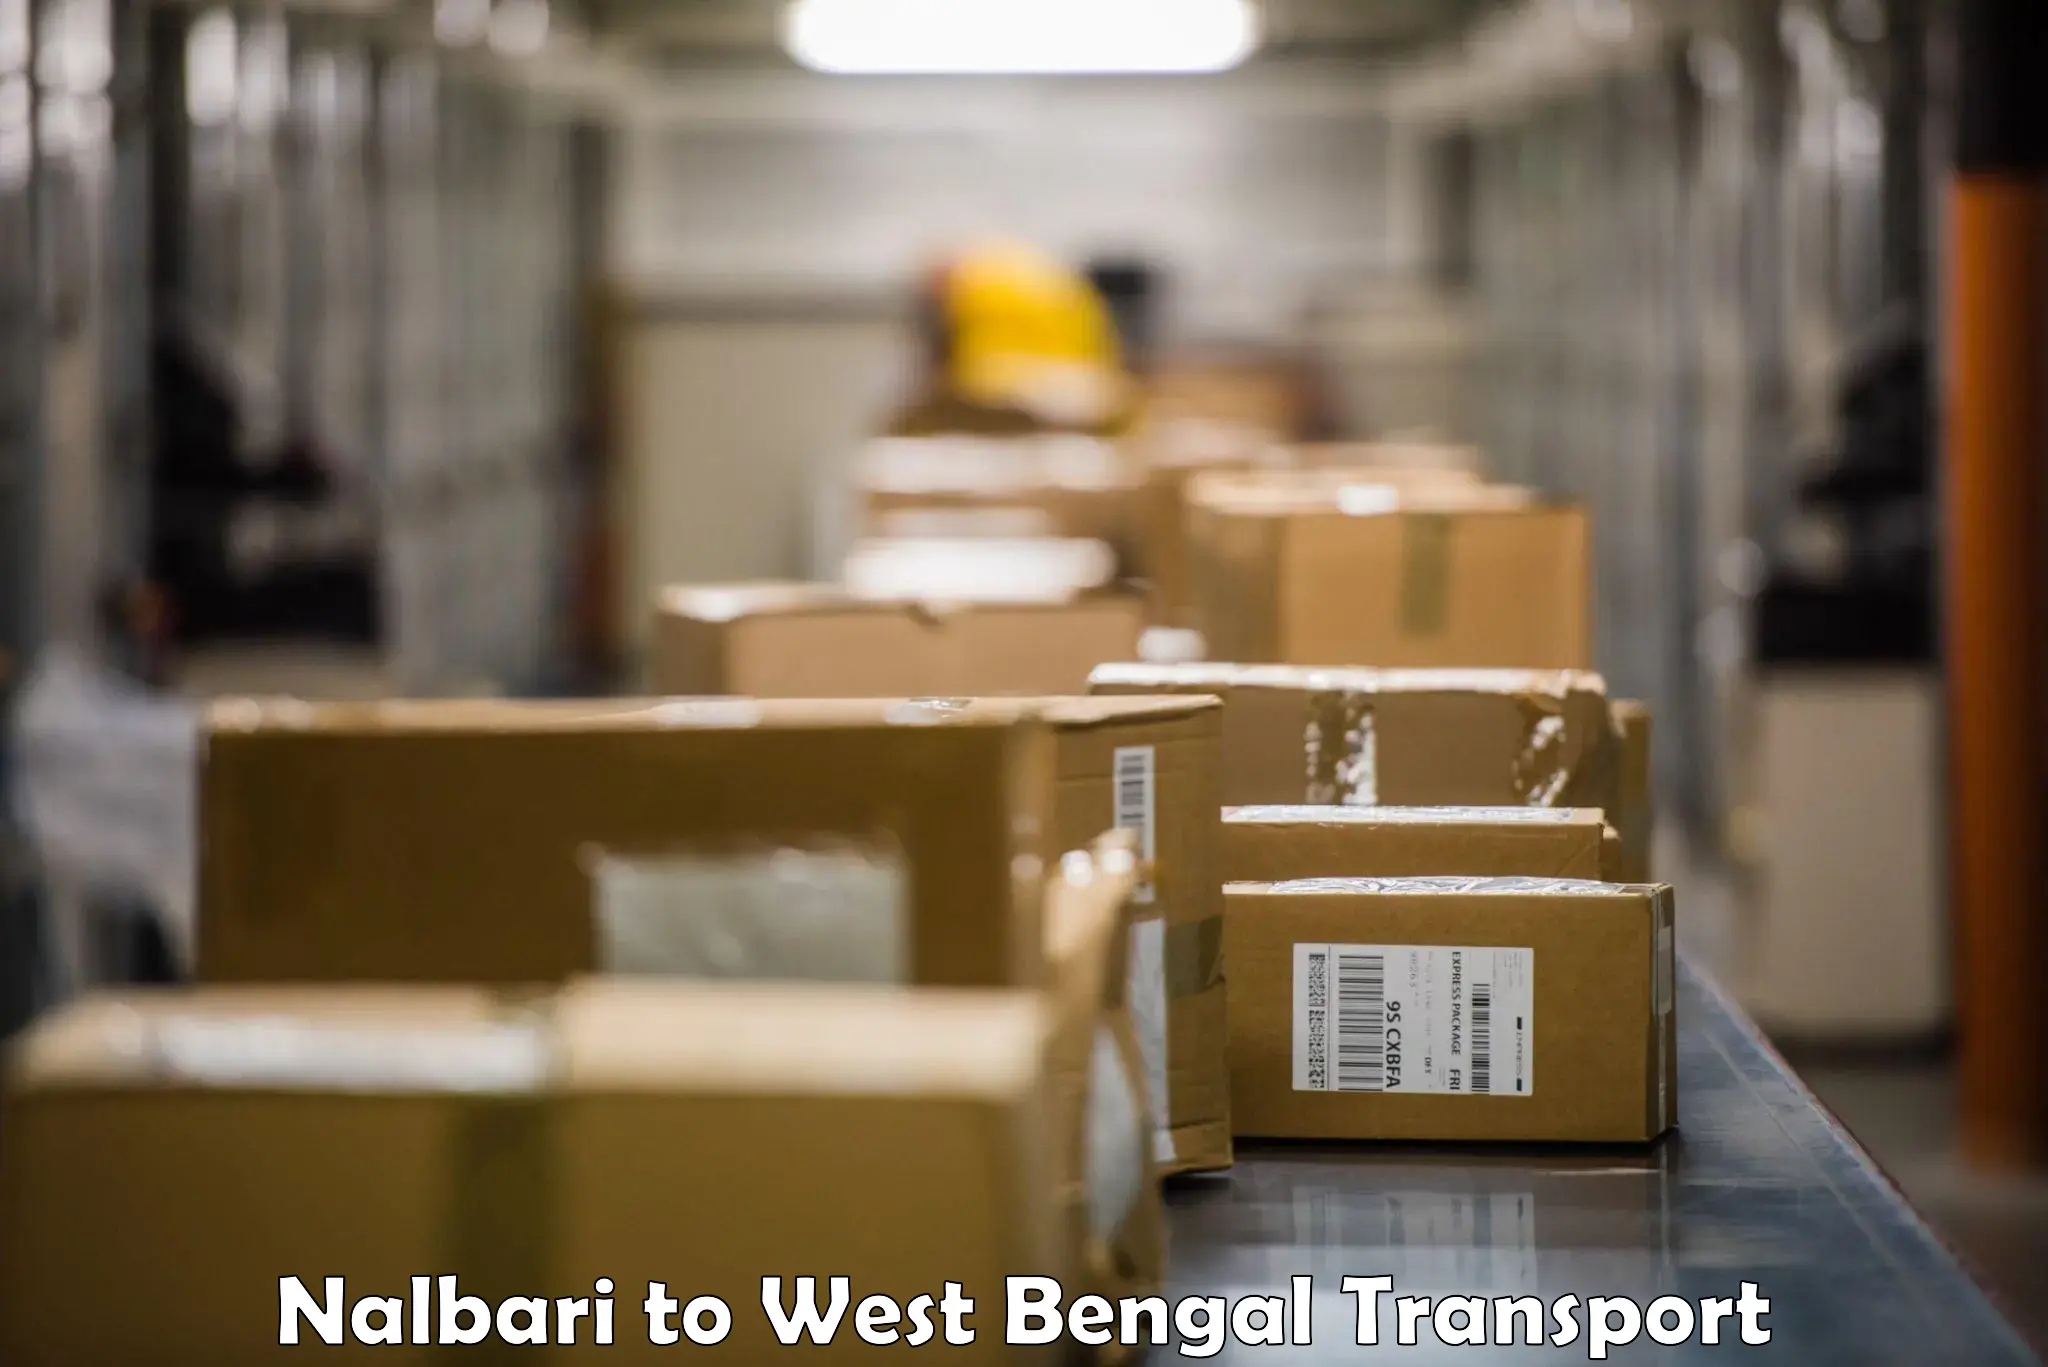 Truck transport companies in India Nalbari to Bongaon